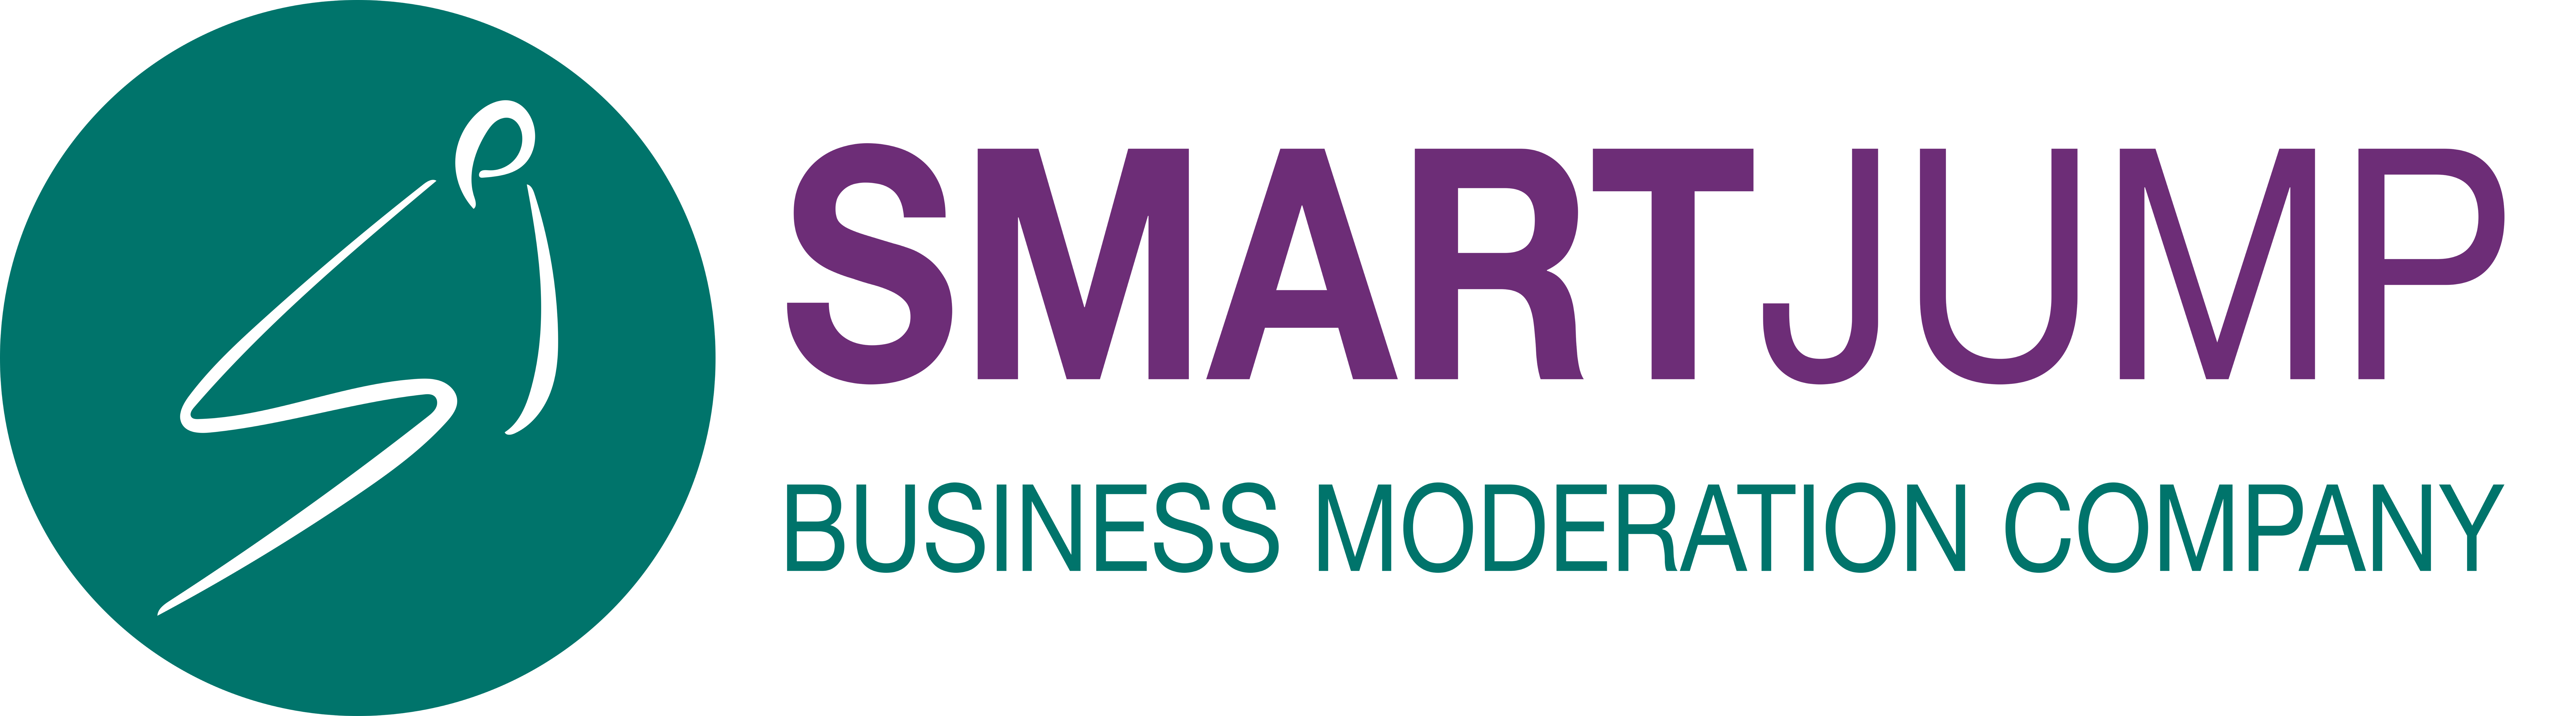 SmartJump LLC ՍՊԸ